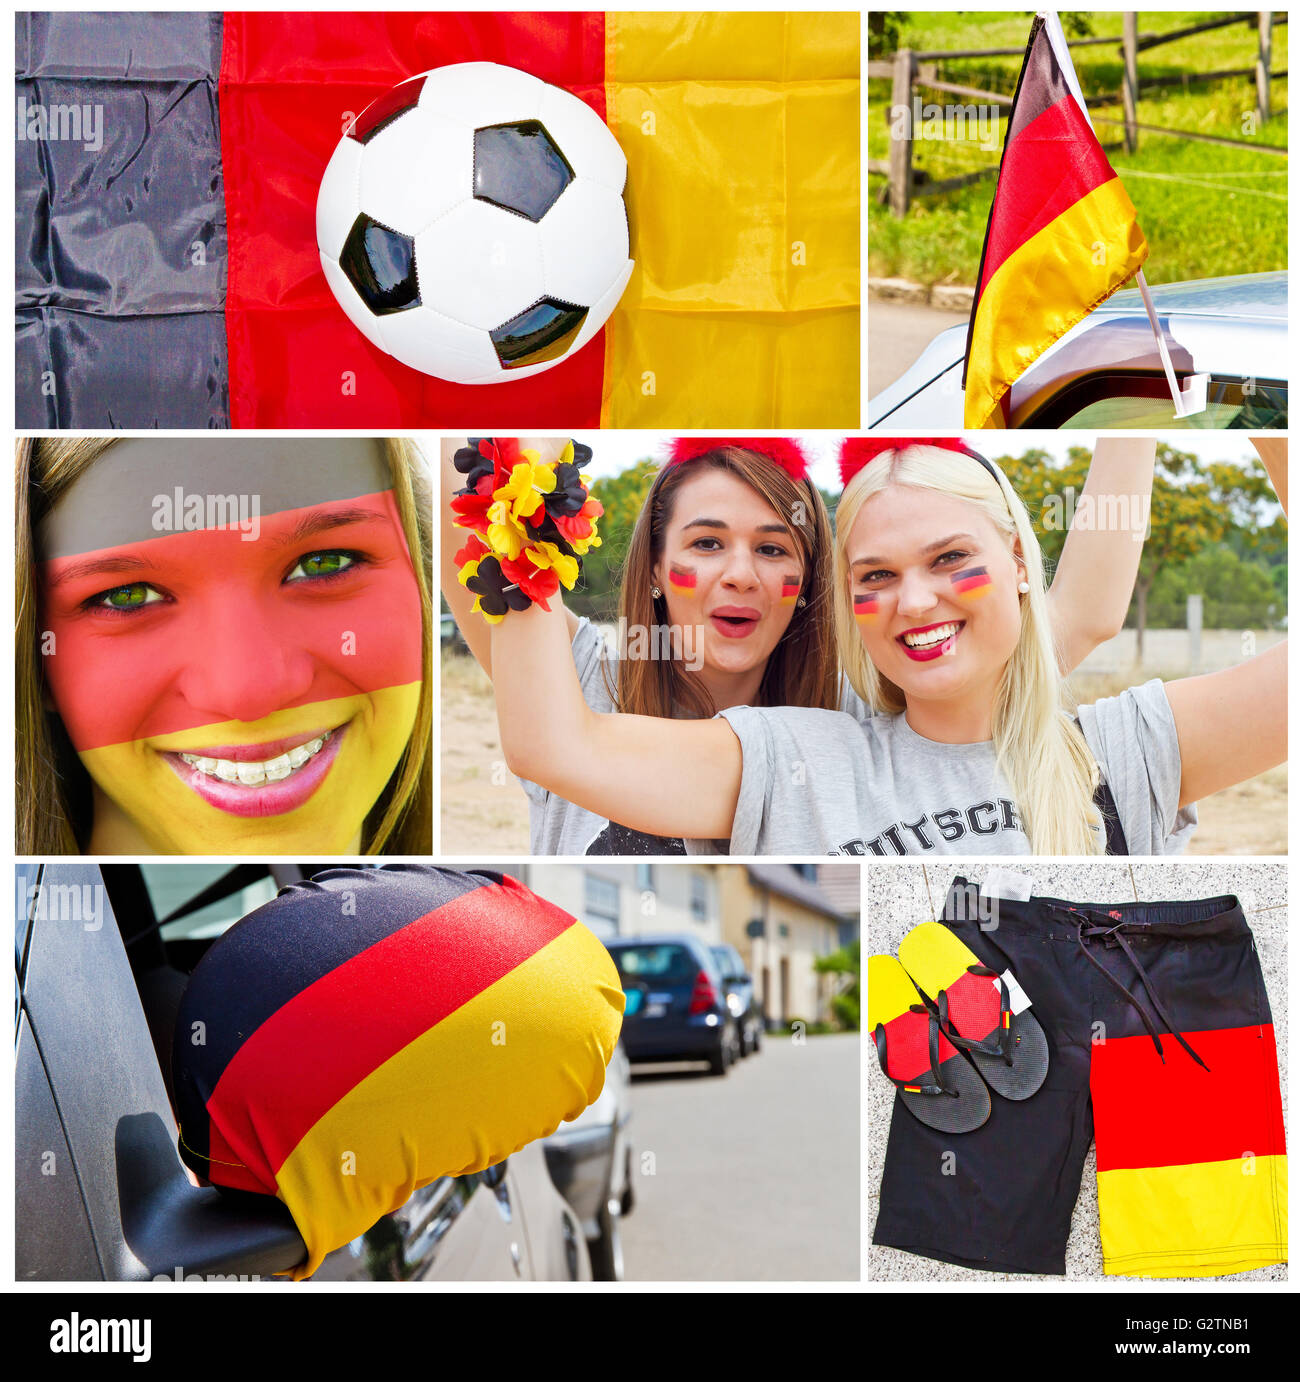 Deutsche Fußball-Fans - Foto-collage Stockfoto